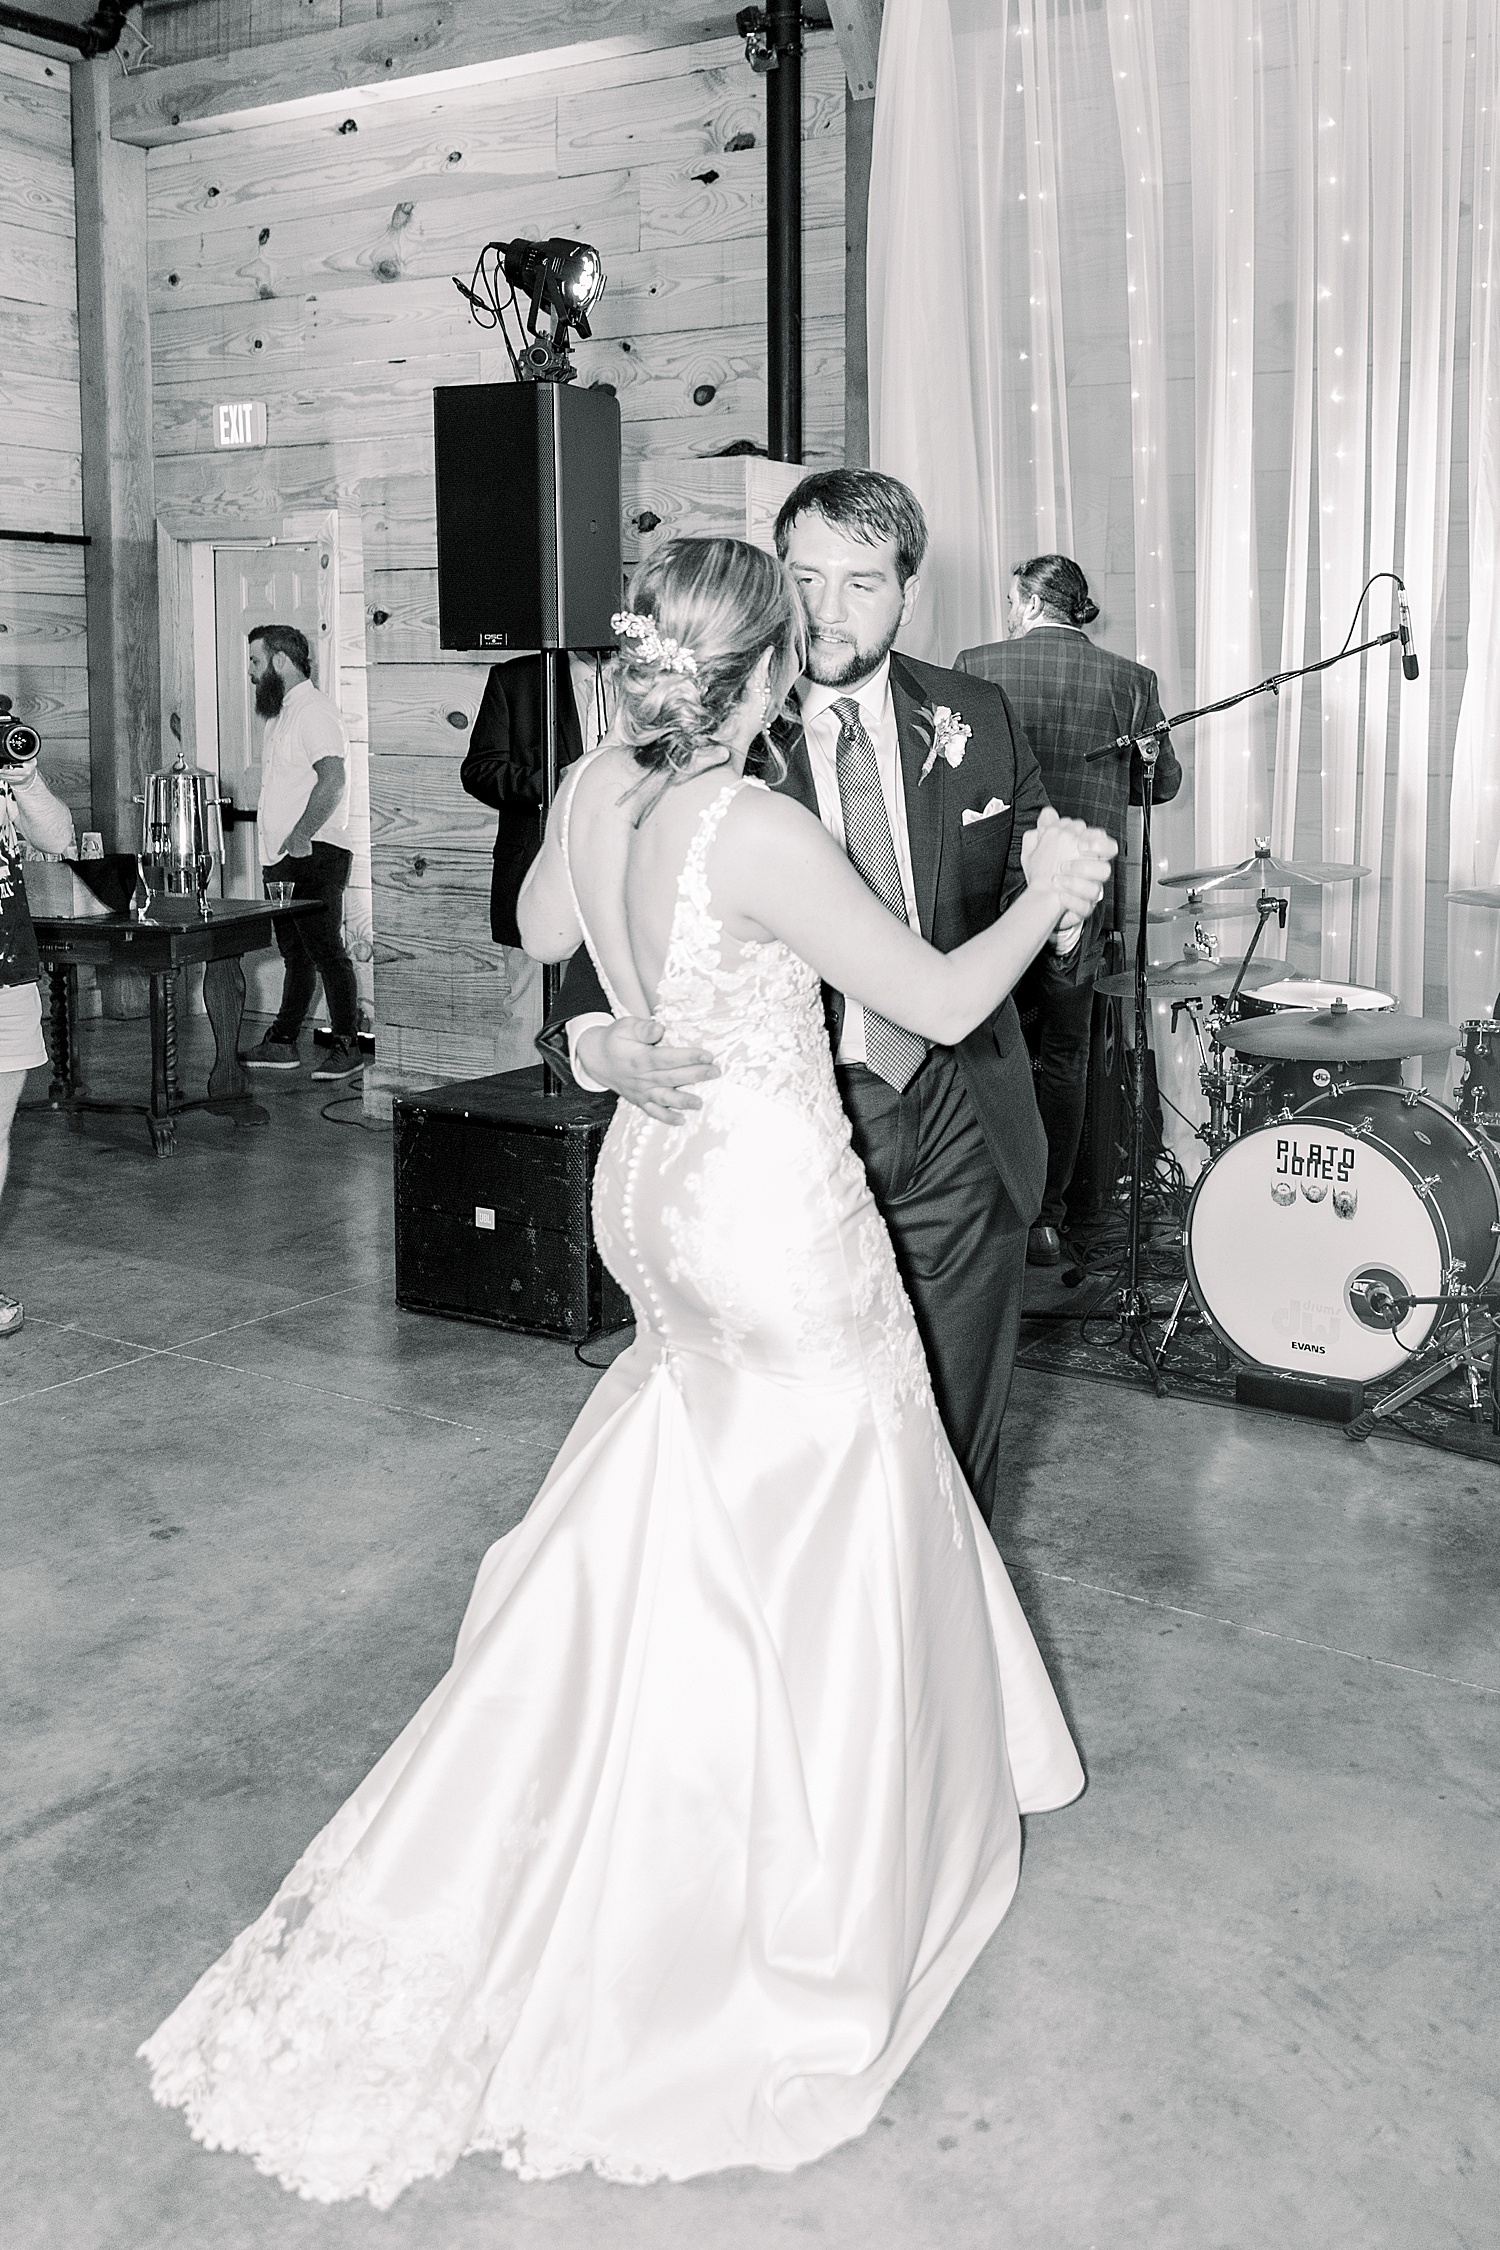 Bride + Groom dance at wedding reception